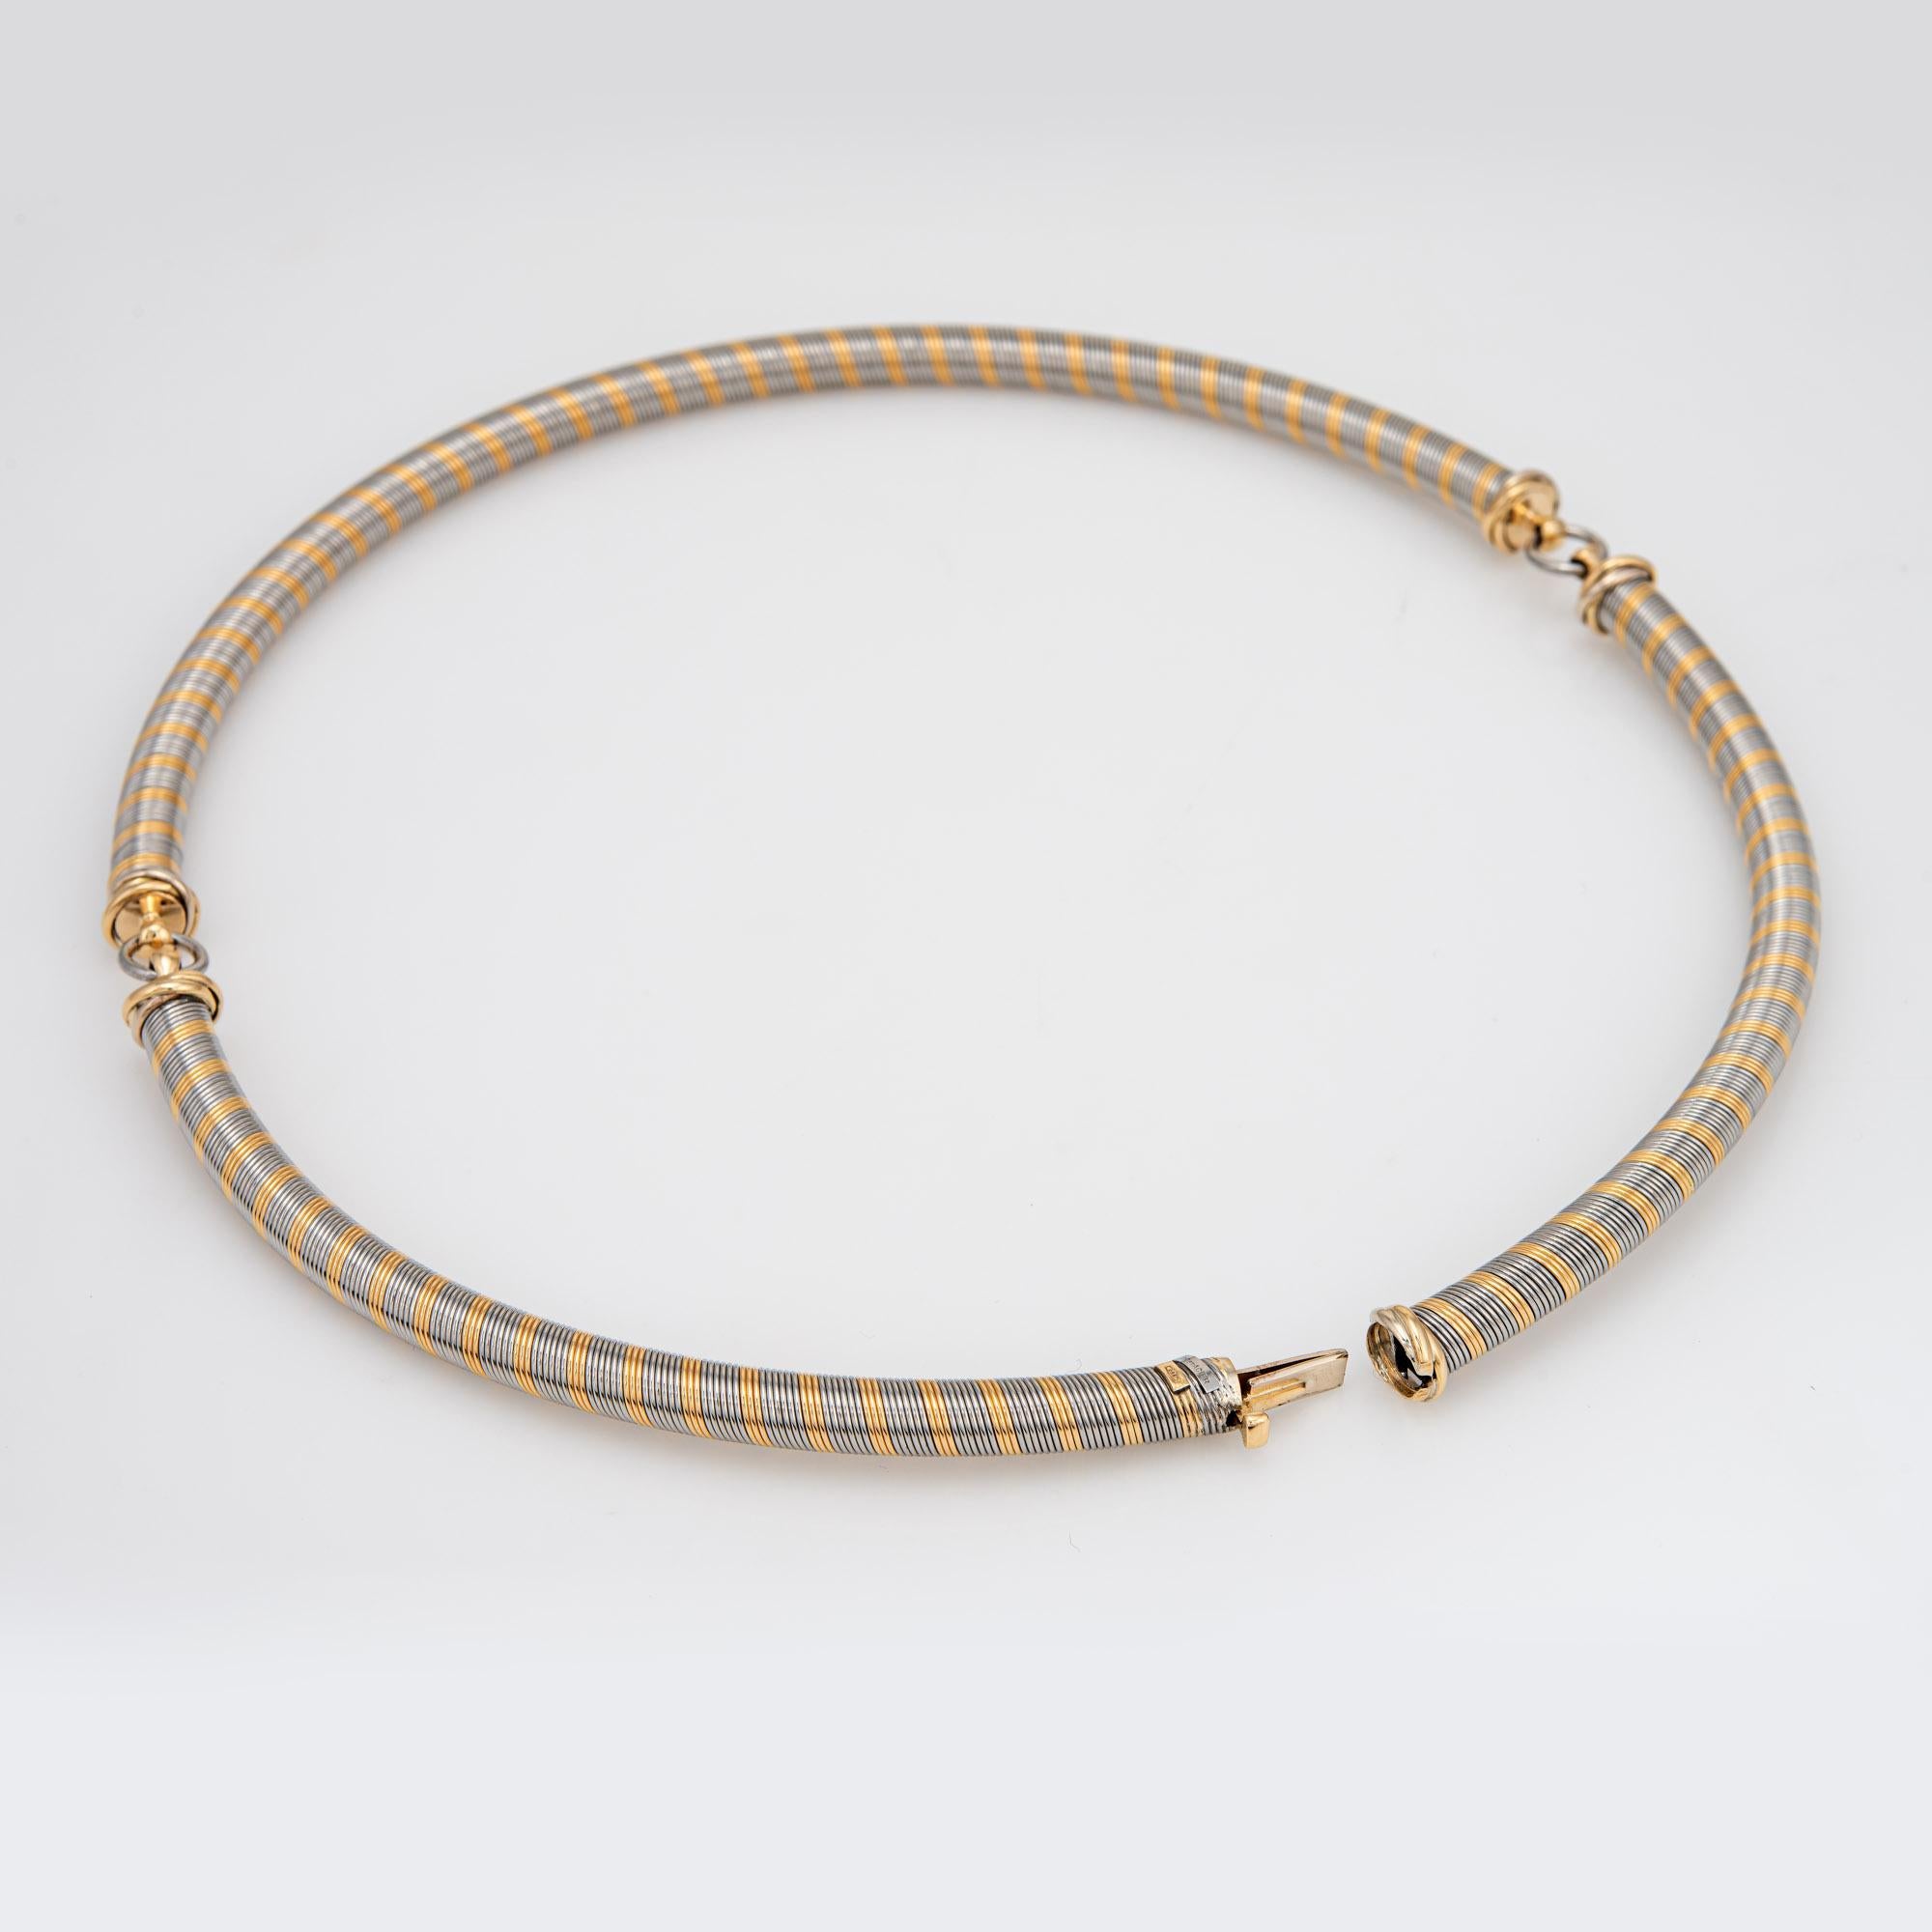 Vintage Cartier Halskette aus Edelstahl und 18 Karat Gelbgold (ca. 1980er Jahre).  

Die Halskette misst 16 Zoll in der Länge und ist so konzipiert, dass sie im Nacken sitzt. Der eng gewickelte Edelstahl und das 18-karätige Gold fühlen sich glatt an